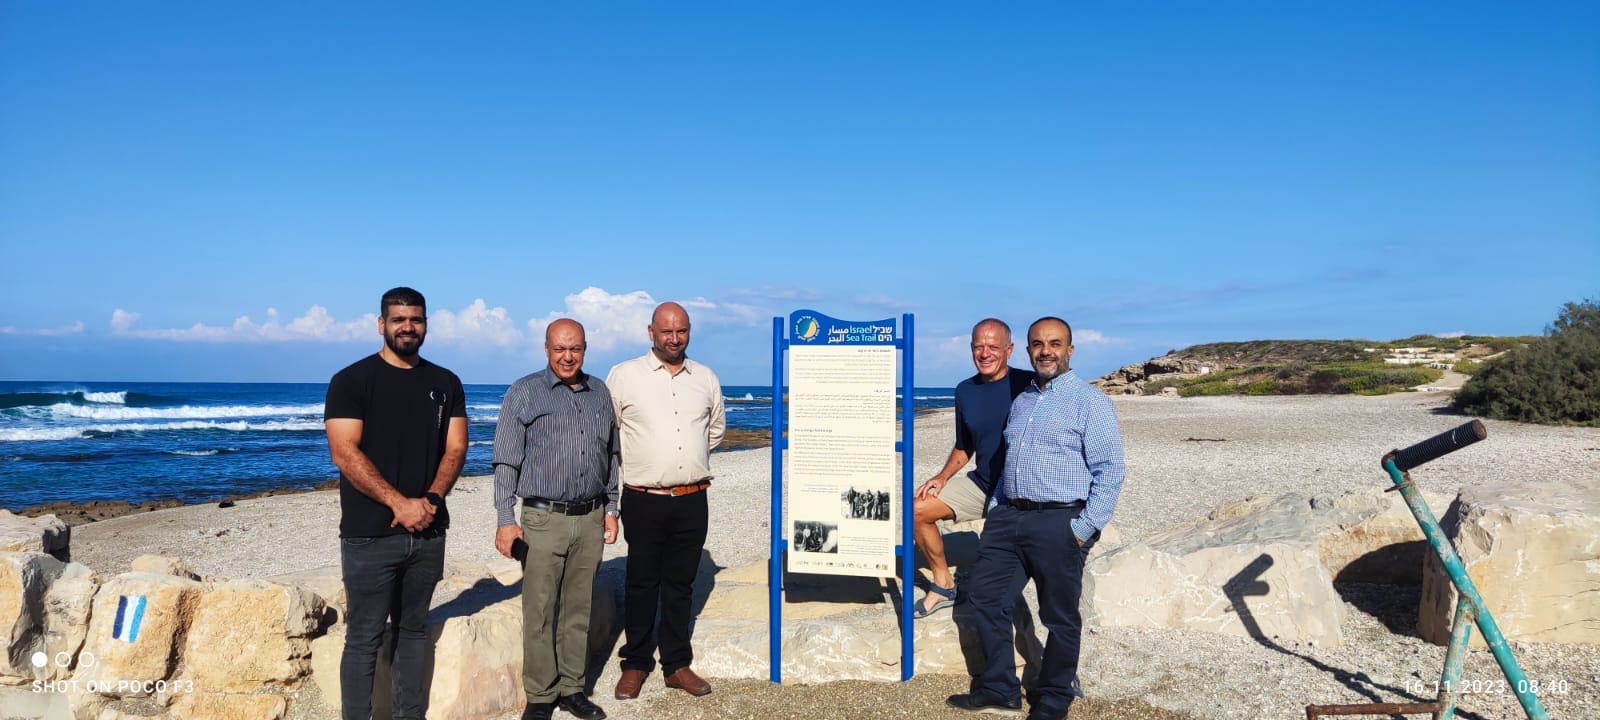 مشروع "البحر" برعايه الدكتور اليك ادلر من جامعة حيفا والذي يسعى لرسم مسار على سواحل البلاد من شمالها الى جنوبها